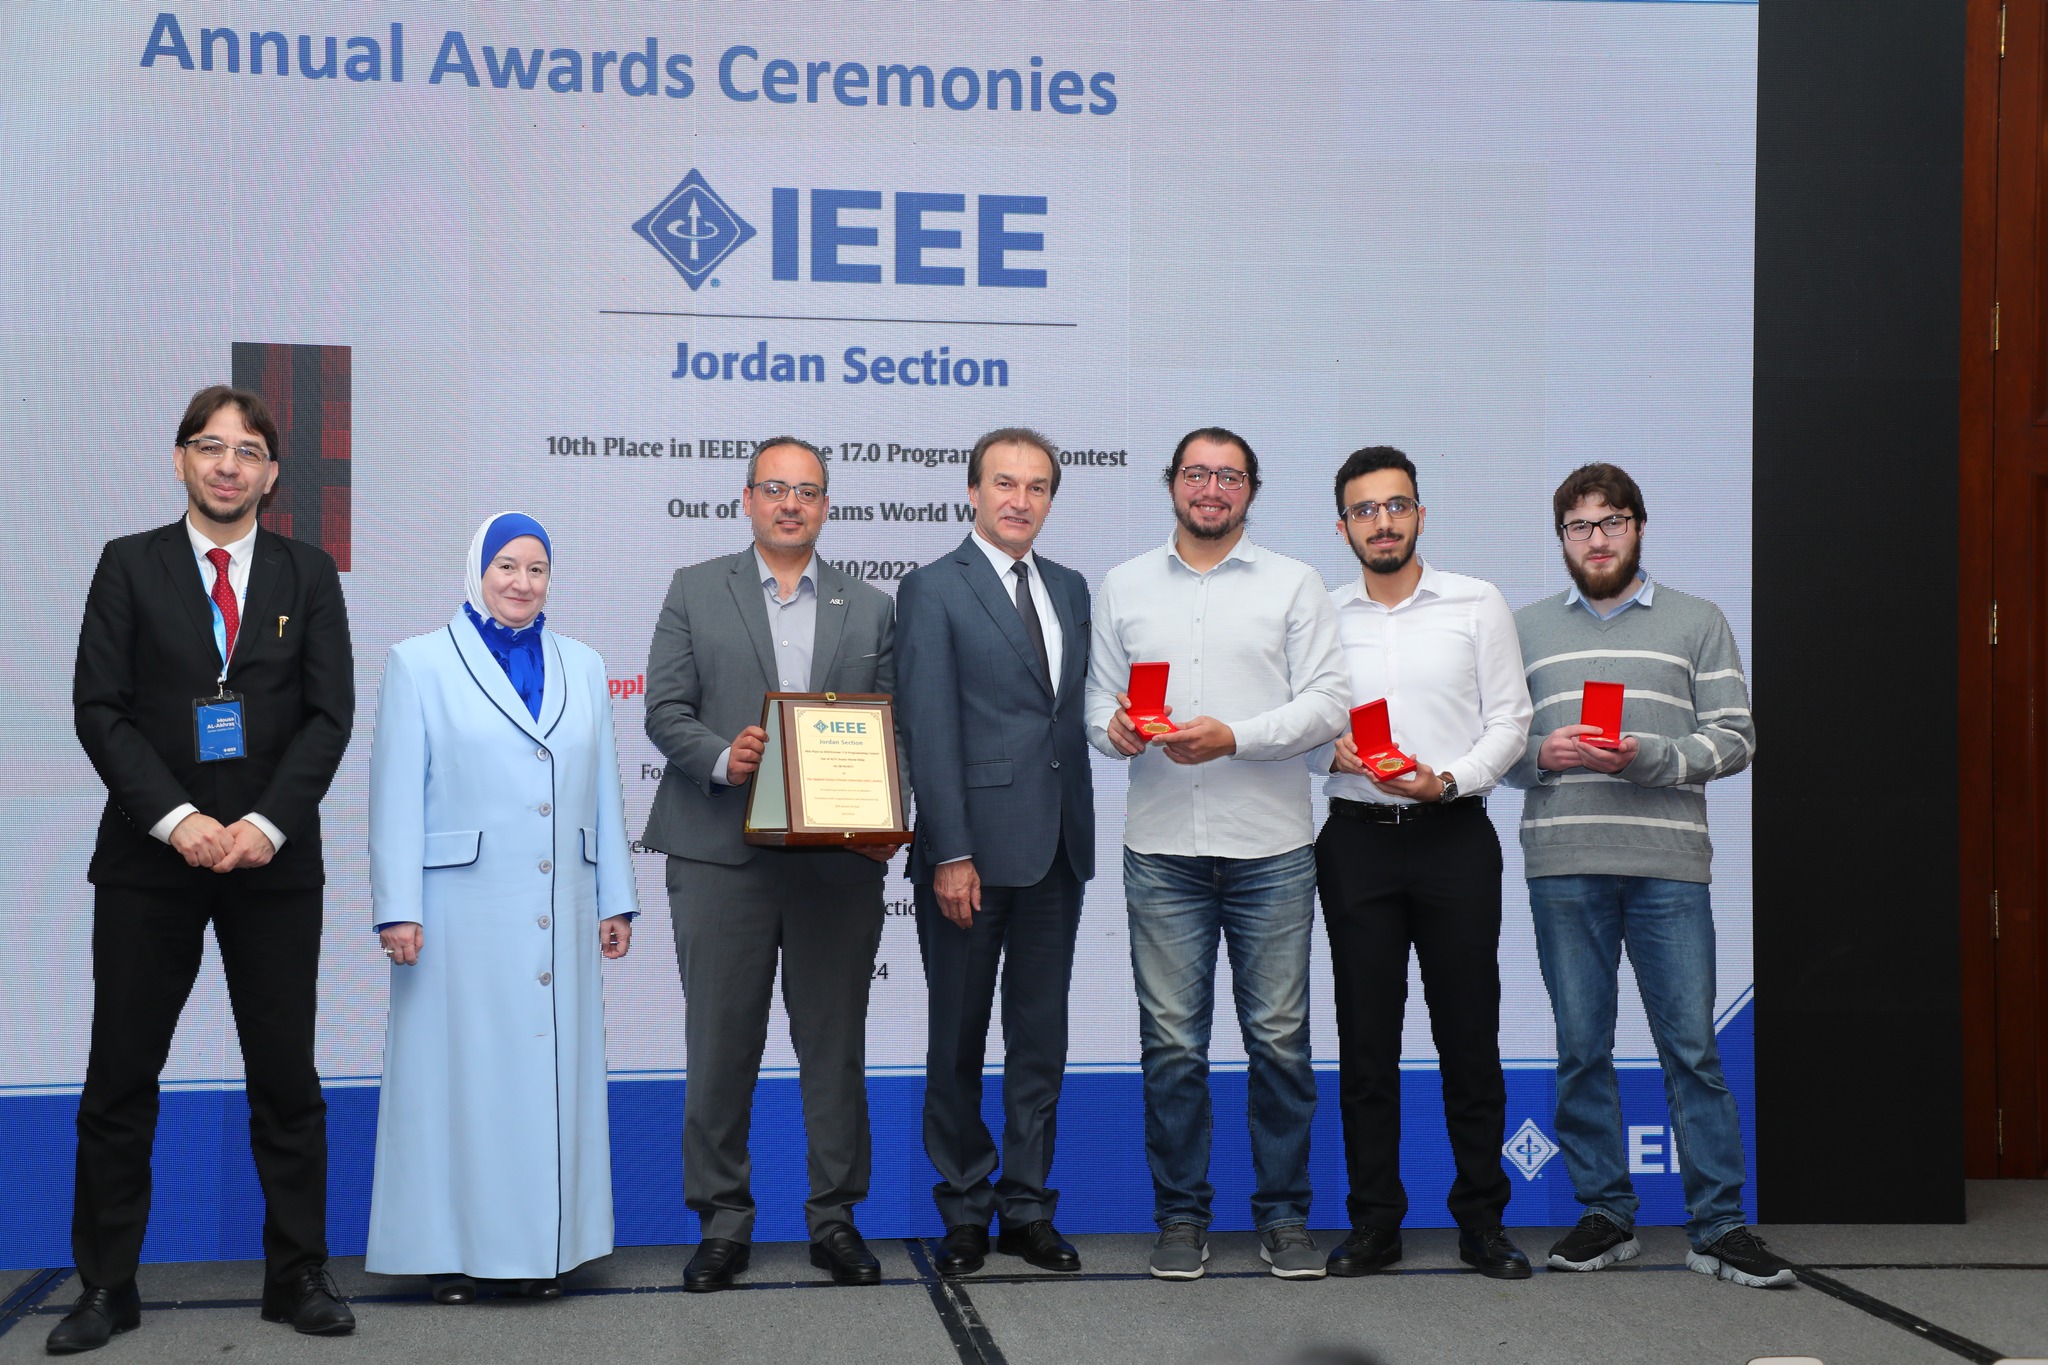 تكريم العلوم التطبيقية من IEEE فرع الأردن على إنجازها النوعي في مسابقة IEEExtreme على مستوى العالم...